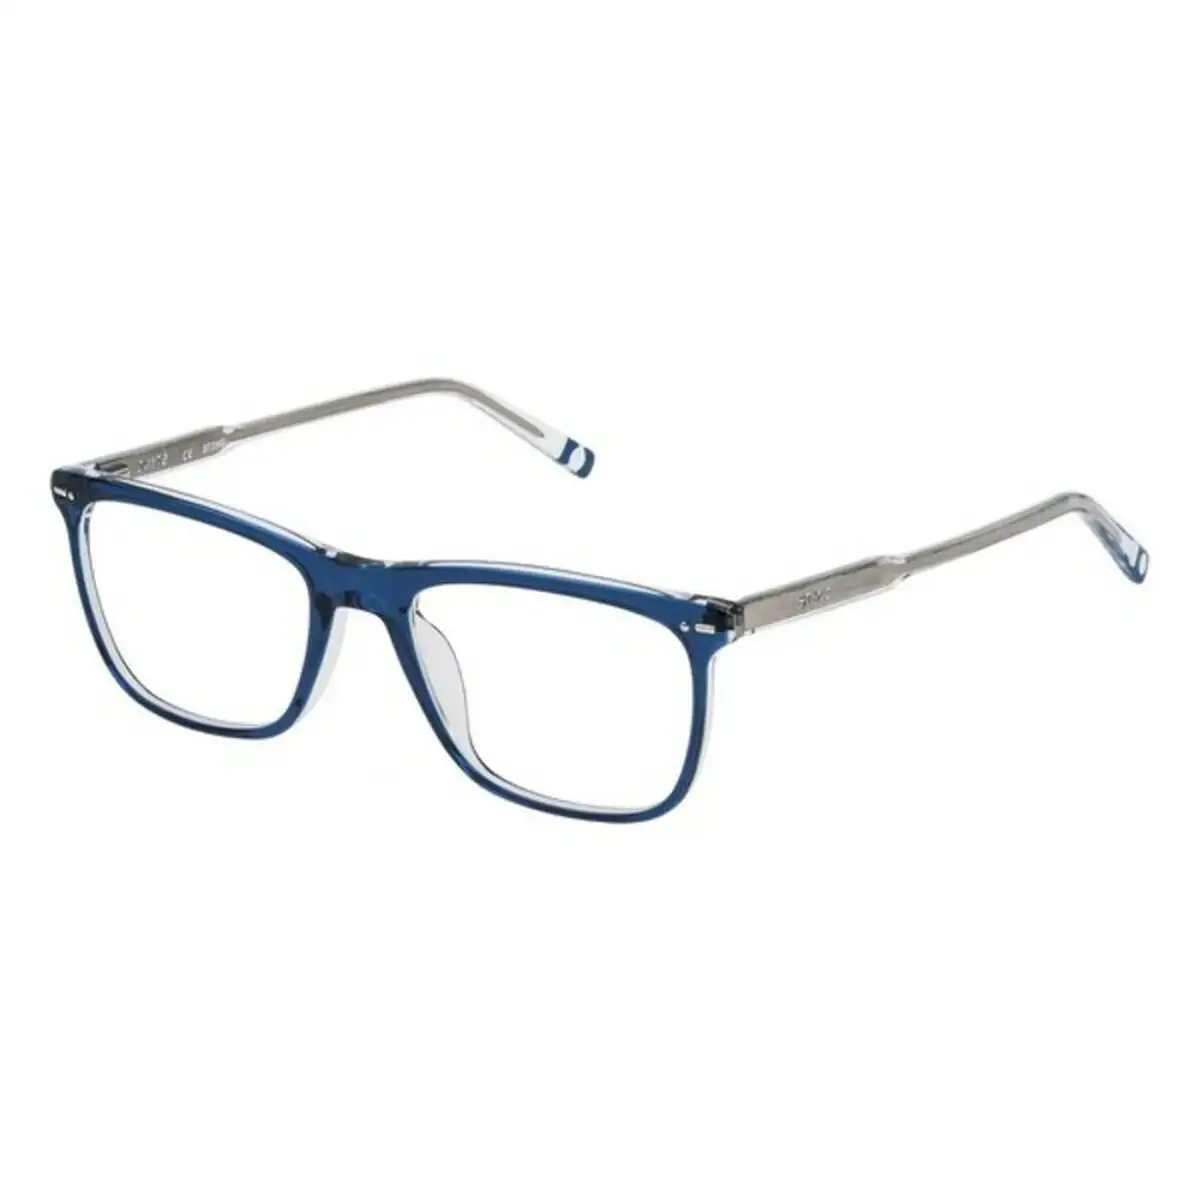 Monture de lunettes homme sting vst014530p57 bleu o 53 mm _5060. DIAYTAR SENEGAL - L'Art du Shopping Sublime. Naviguez à travers notre catalogue et choisissez parmi des produits qui ajoutent une touche raffinée à votre vie quotidienne.